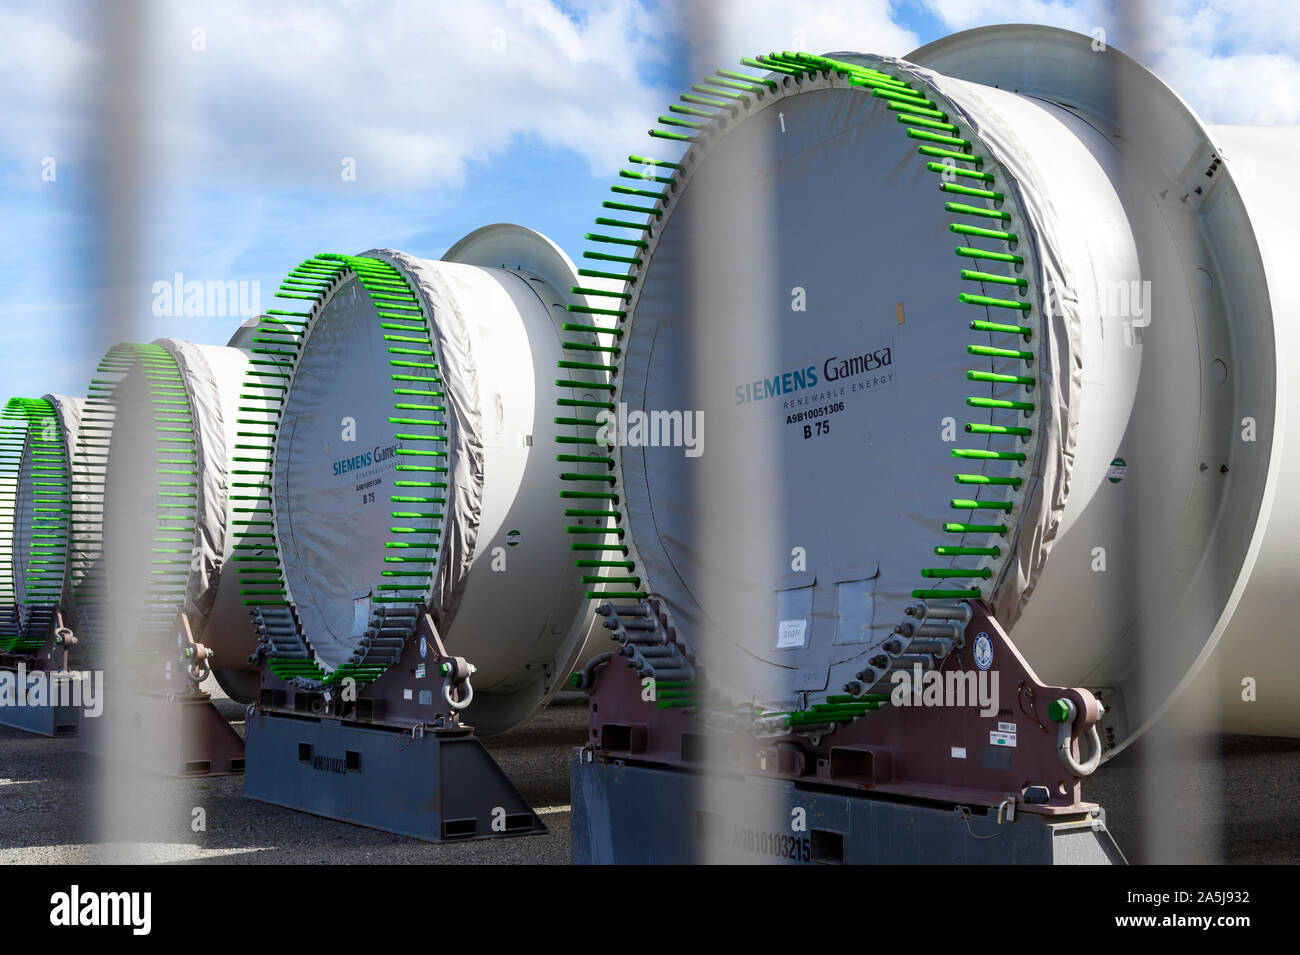 Las paletas de las turbinas eólicas de Gamesa Siemens Foto de stock